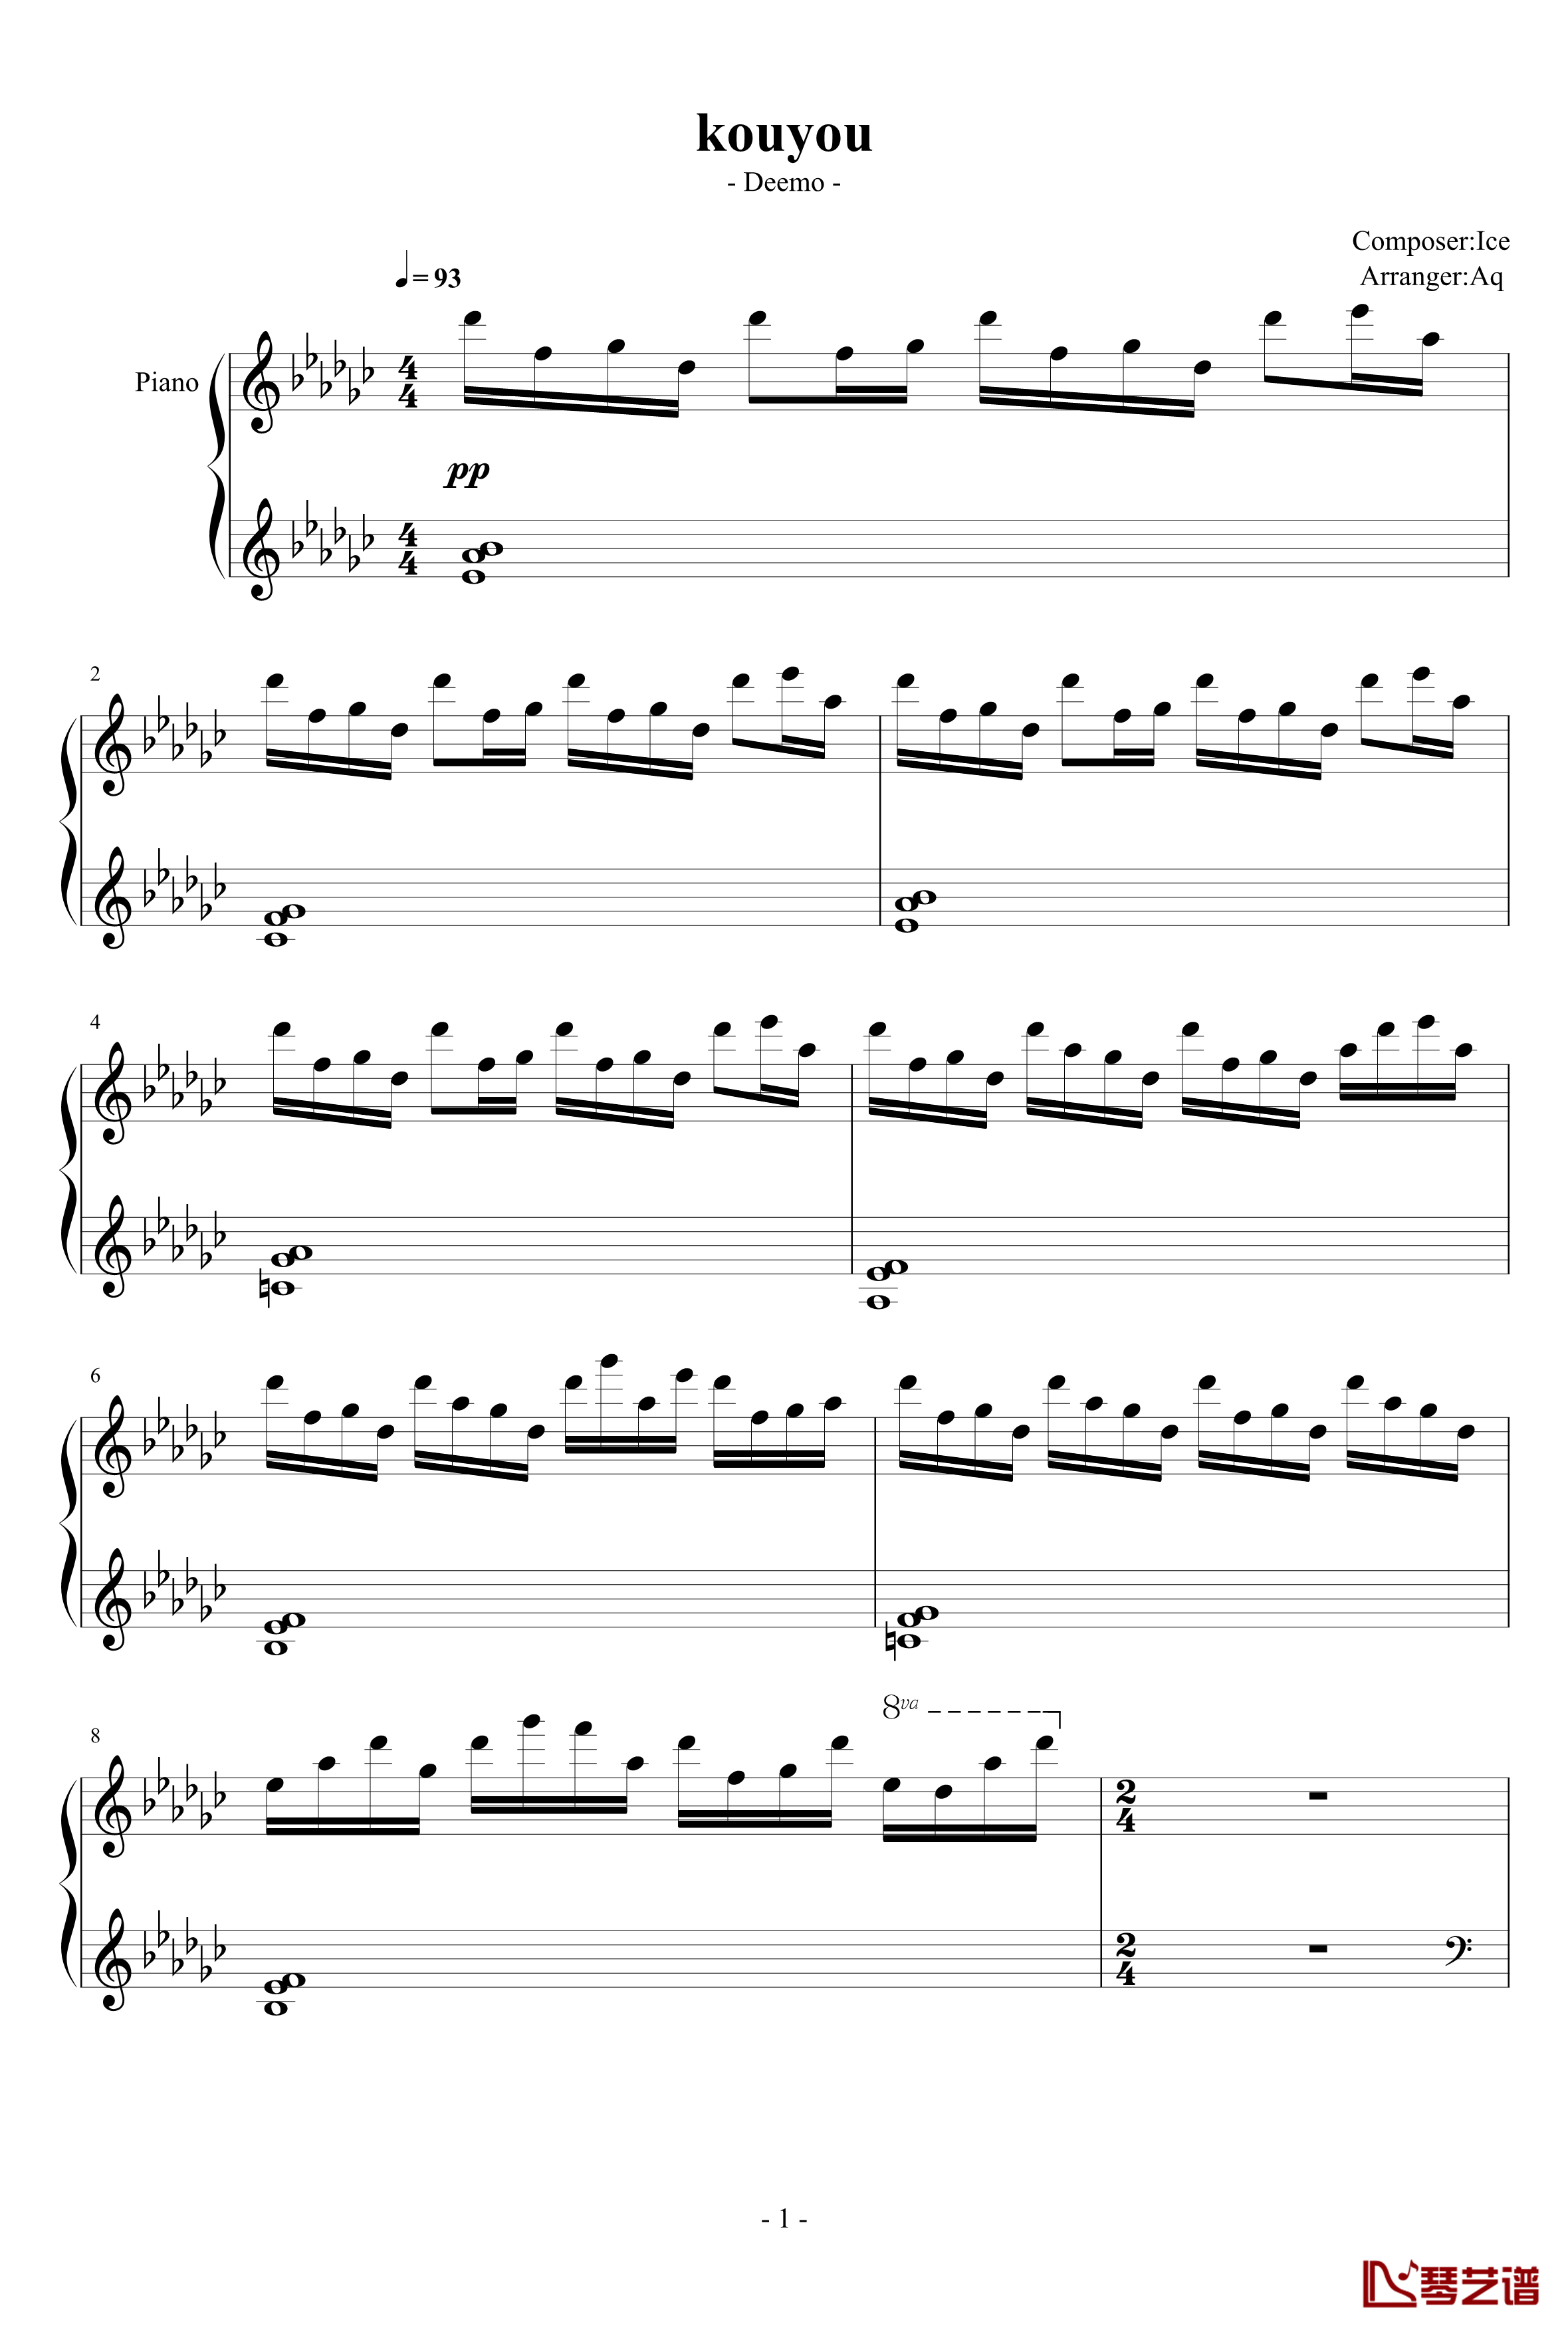 kouyou钢琴谱-Piano Arrangement-Deemo1